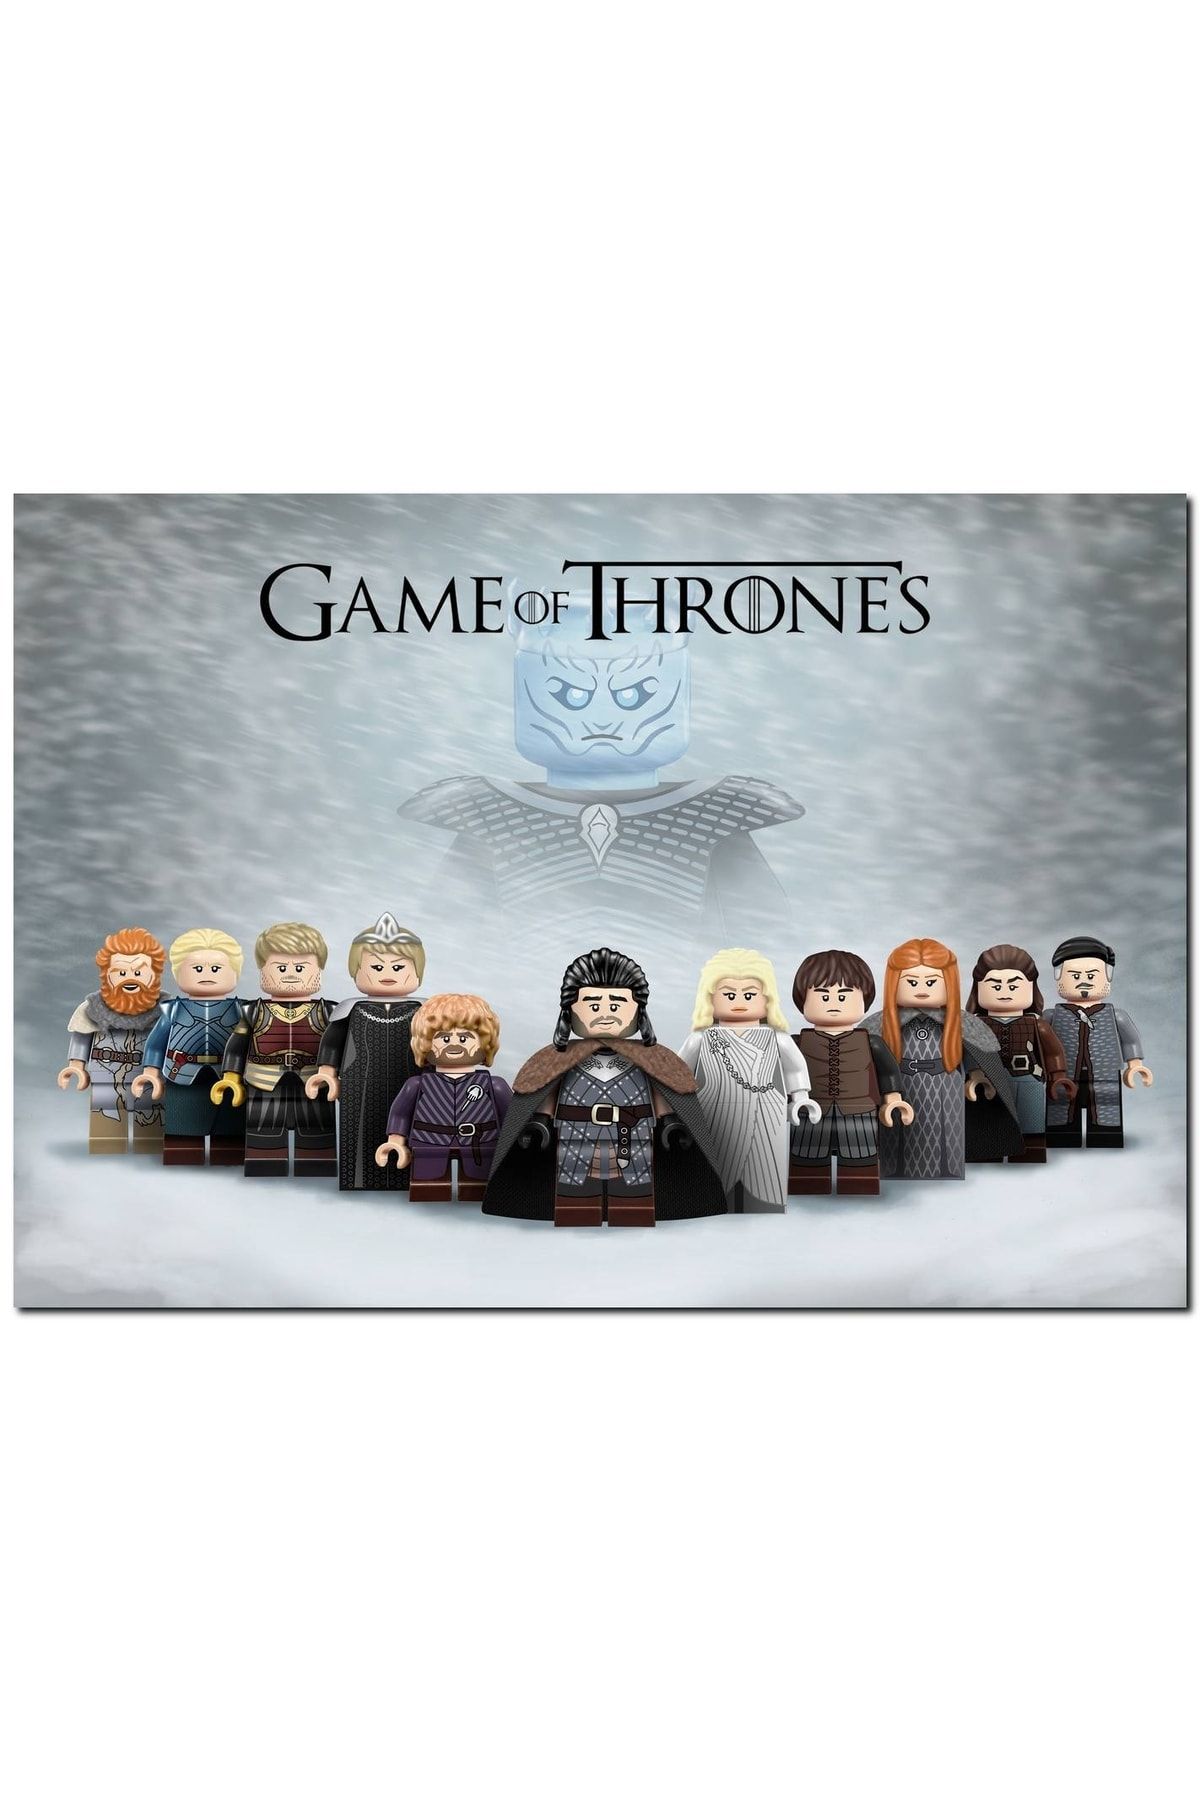 Cakatablo Game Of Thrones House Stark Özel Minifigürler Görseli (35x50 Cm Boyut)